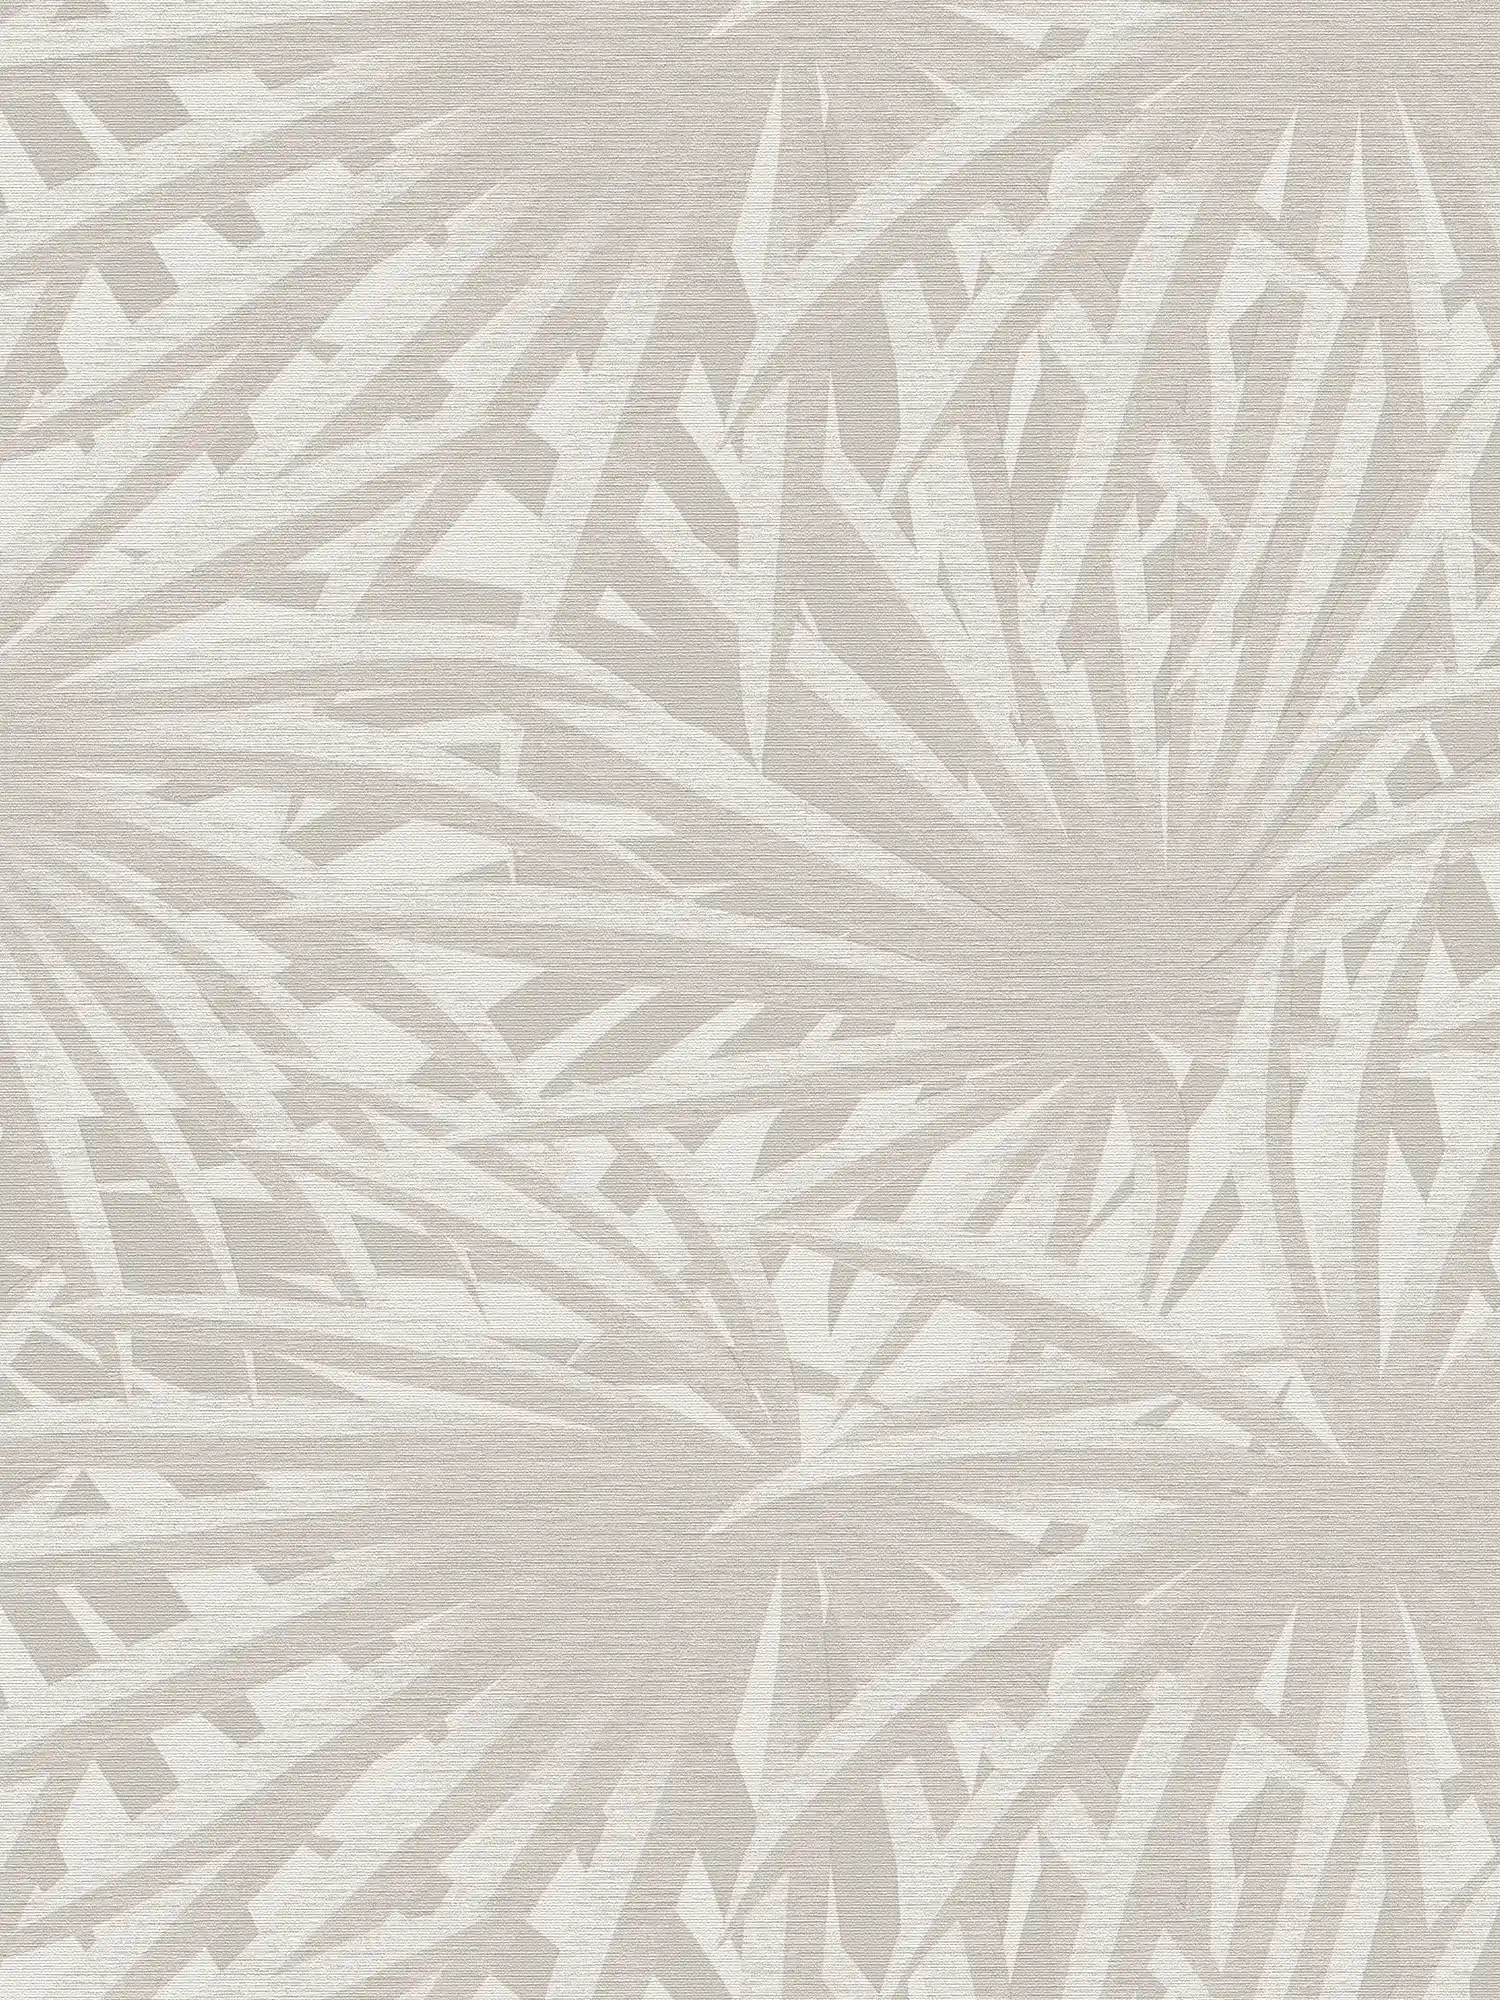 Non-woven wallpaper leaf design with metallic luster - grey, metallic, white
